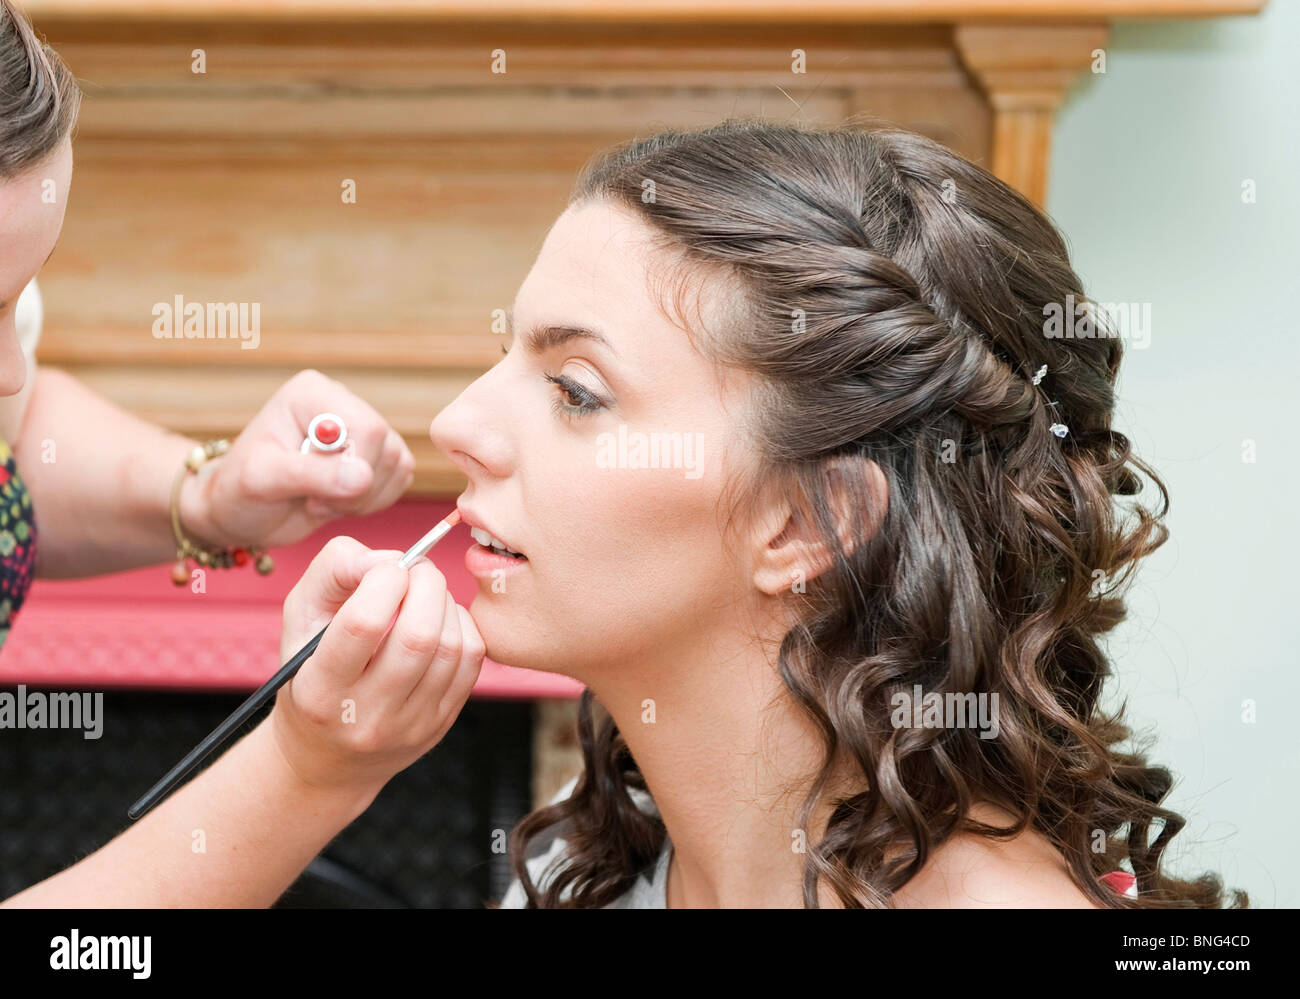 Maquillage mariée ayant appliqué le jour de son mariage Banque D'Images